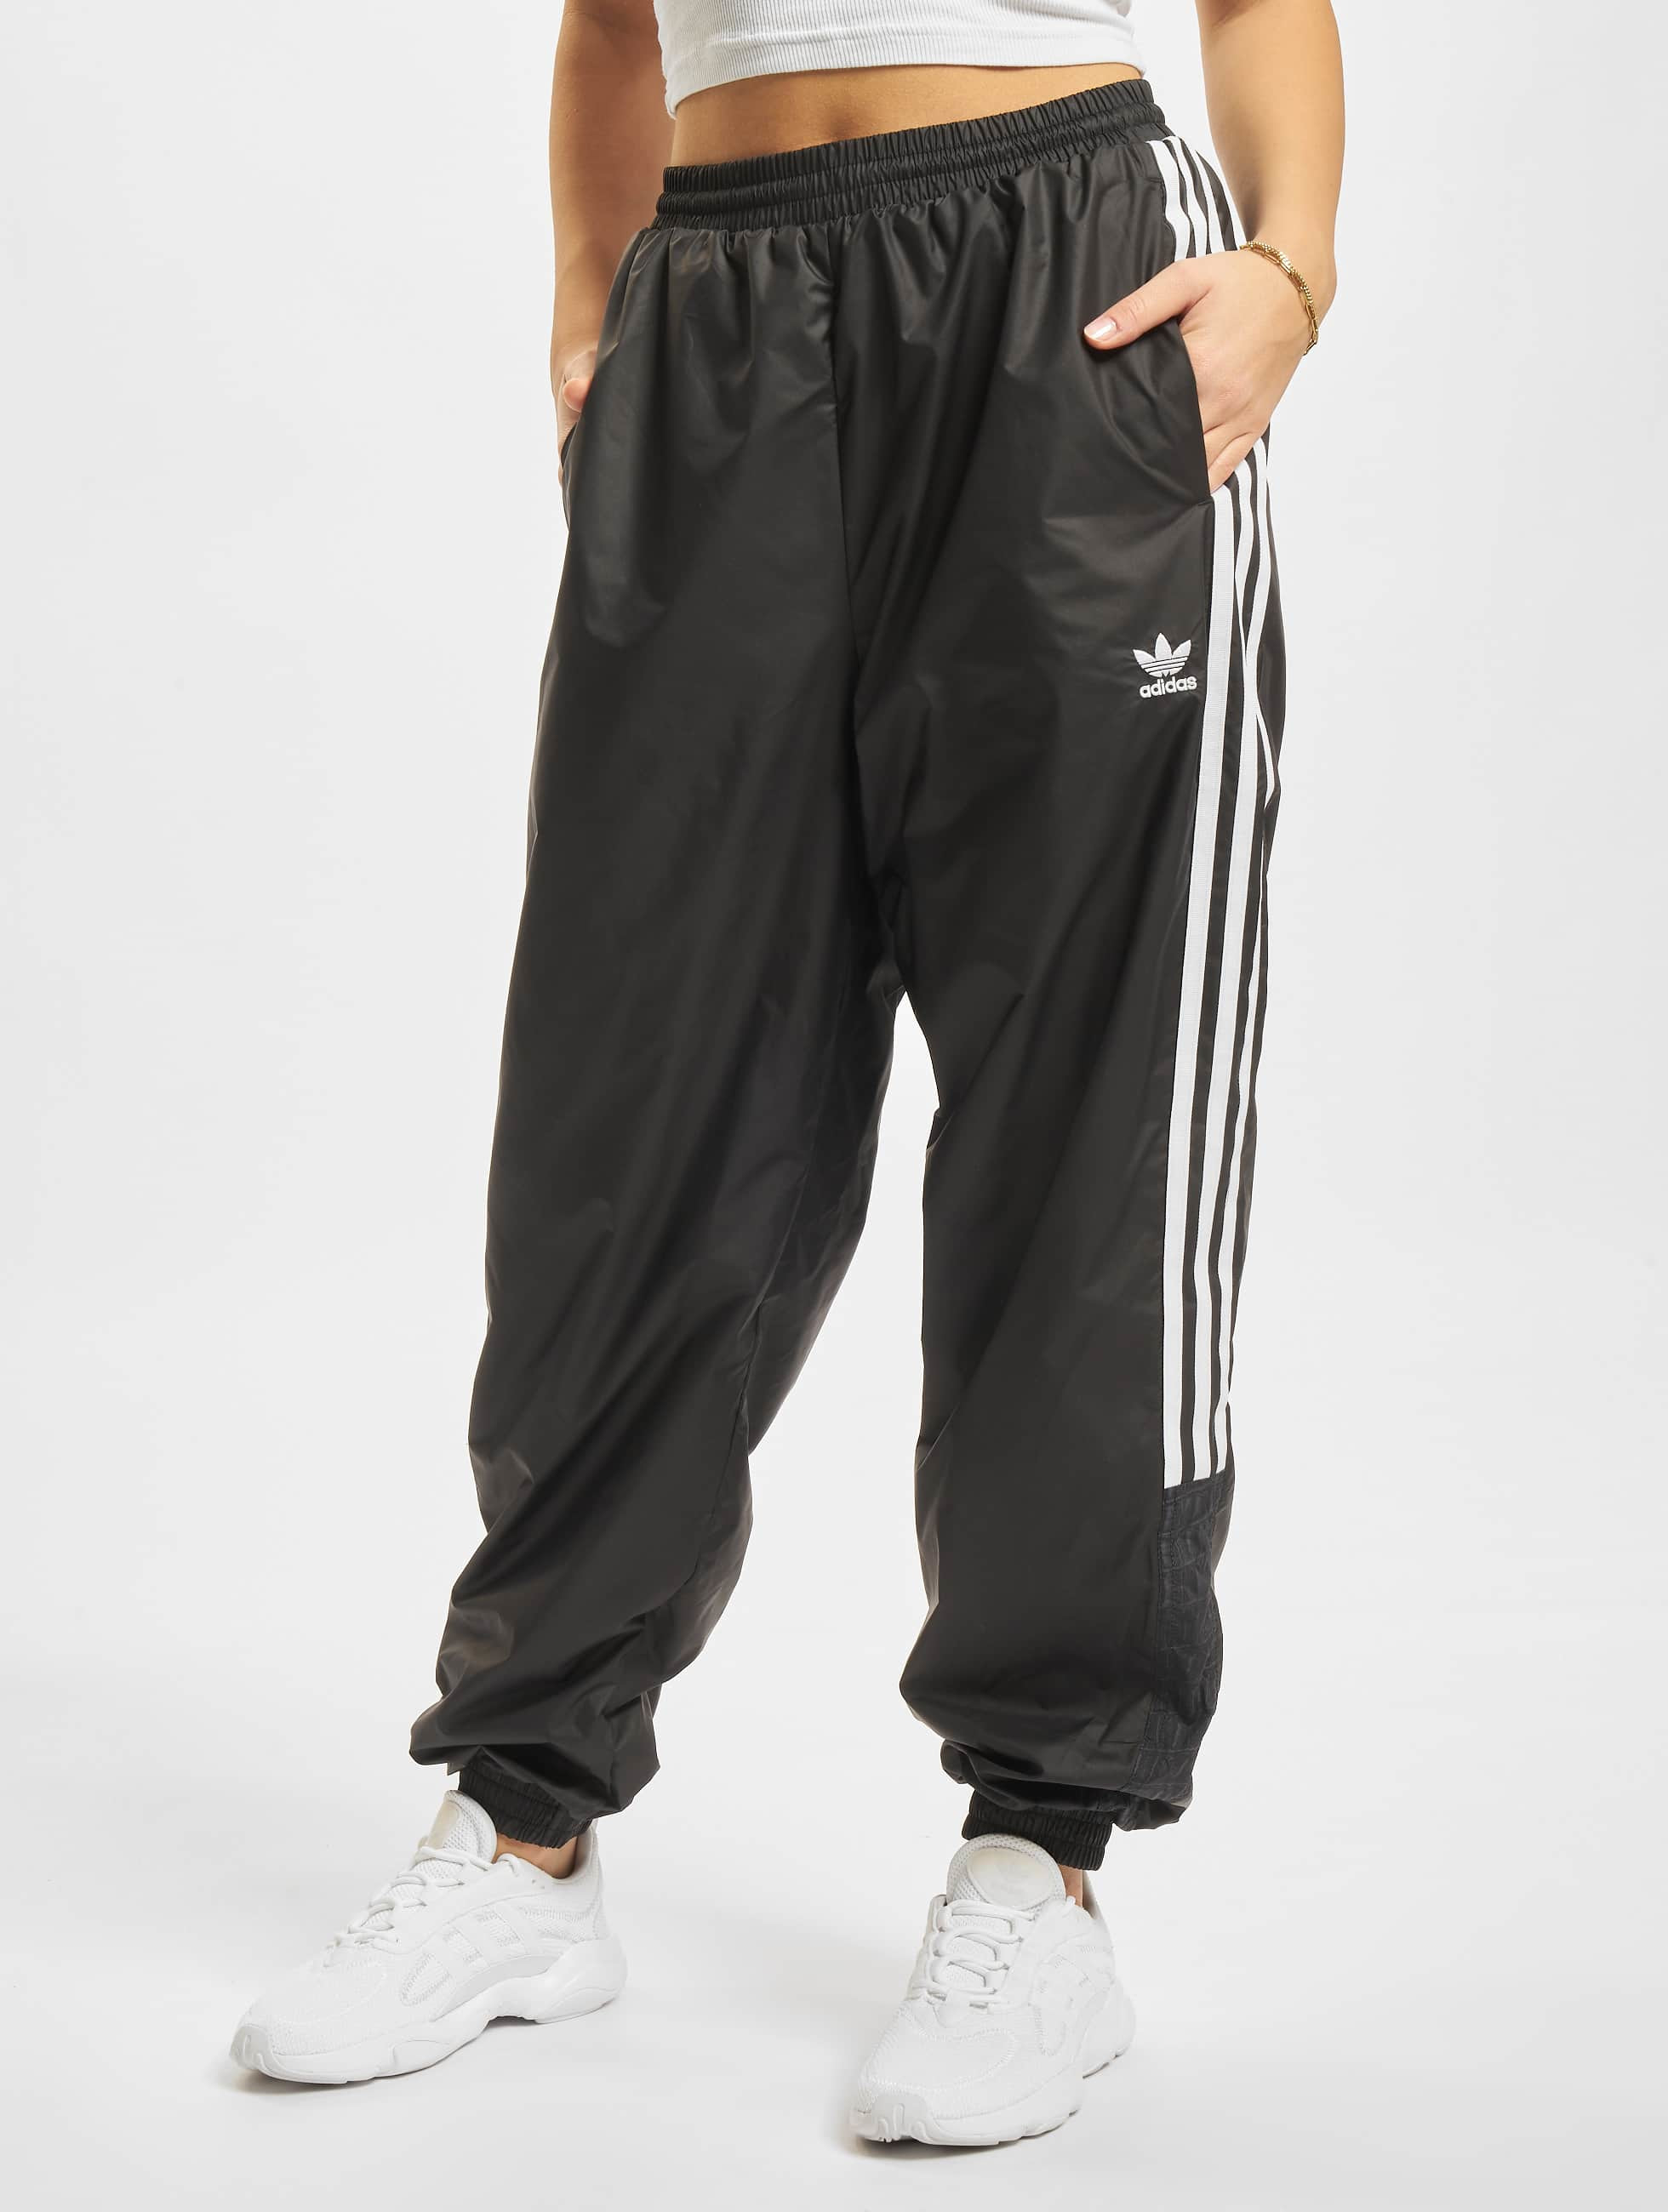 Giet Knipoog pop adidas Originals broek / joggingbroek 3-Stripes in zwart 855277